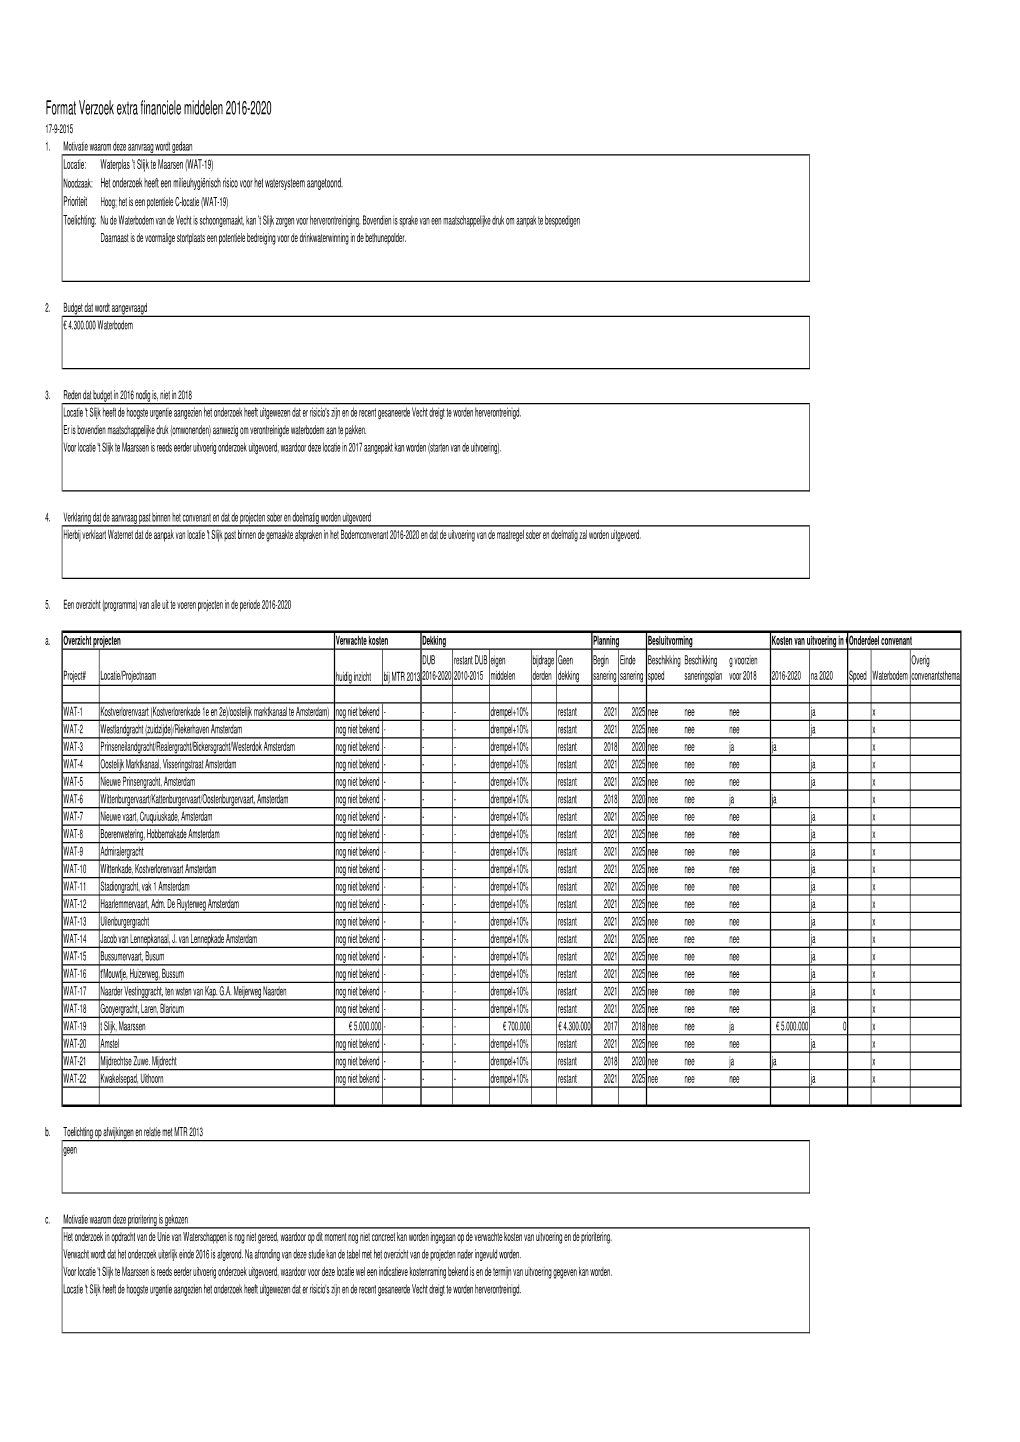 Kopie Van Format Aanvragen Extra Budget 2016-2020-Slijk Printtabel.Xlsx